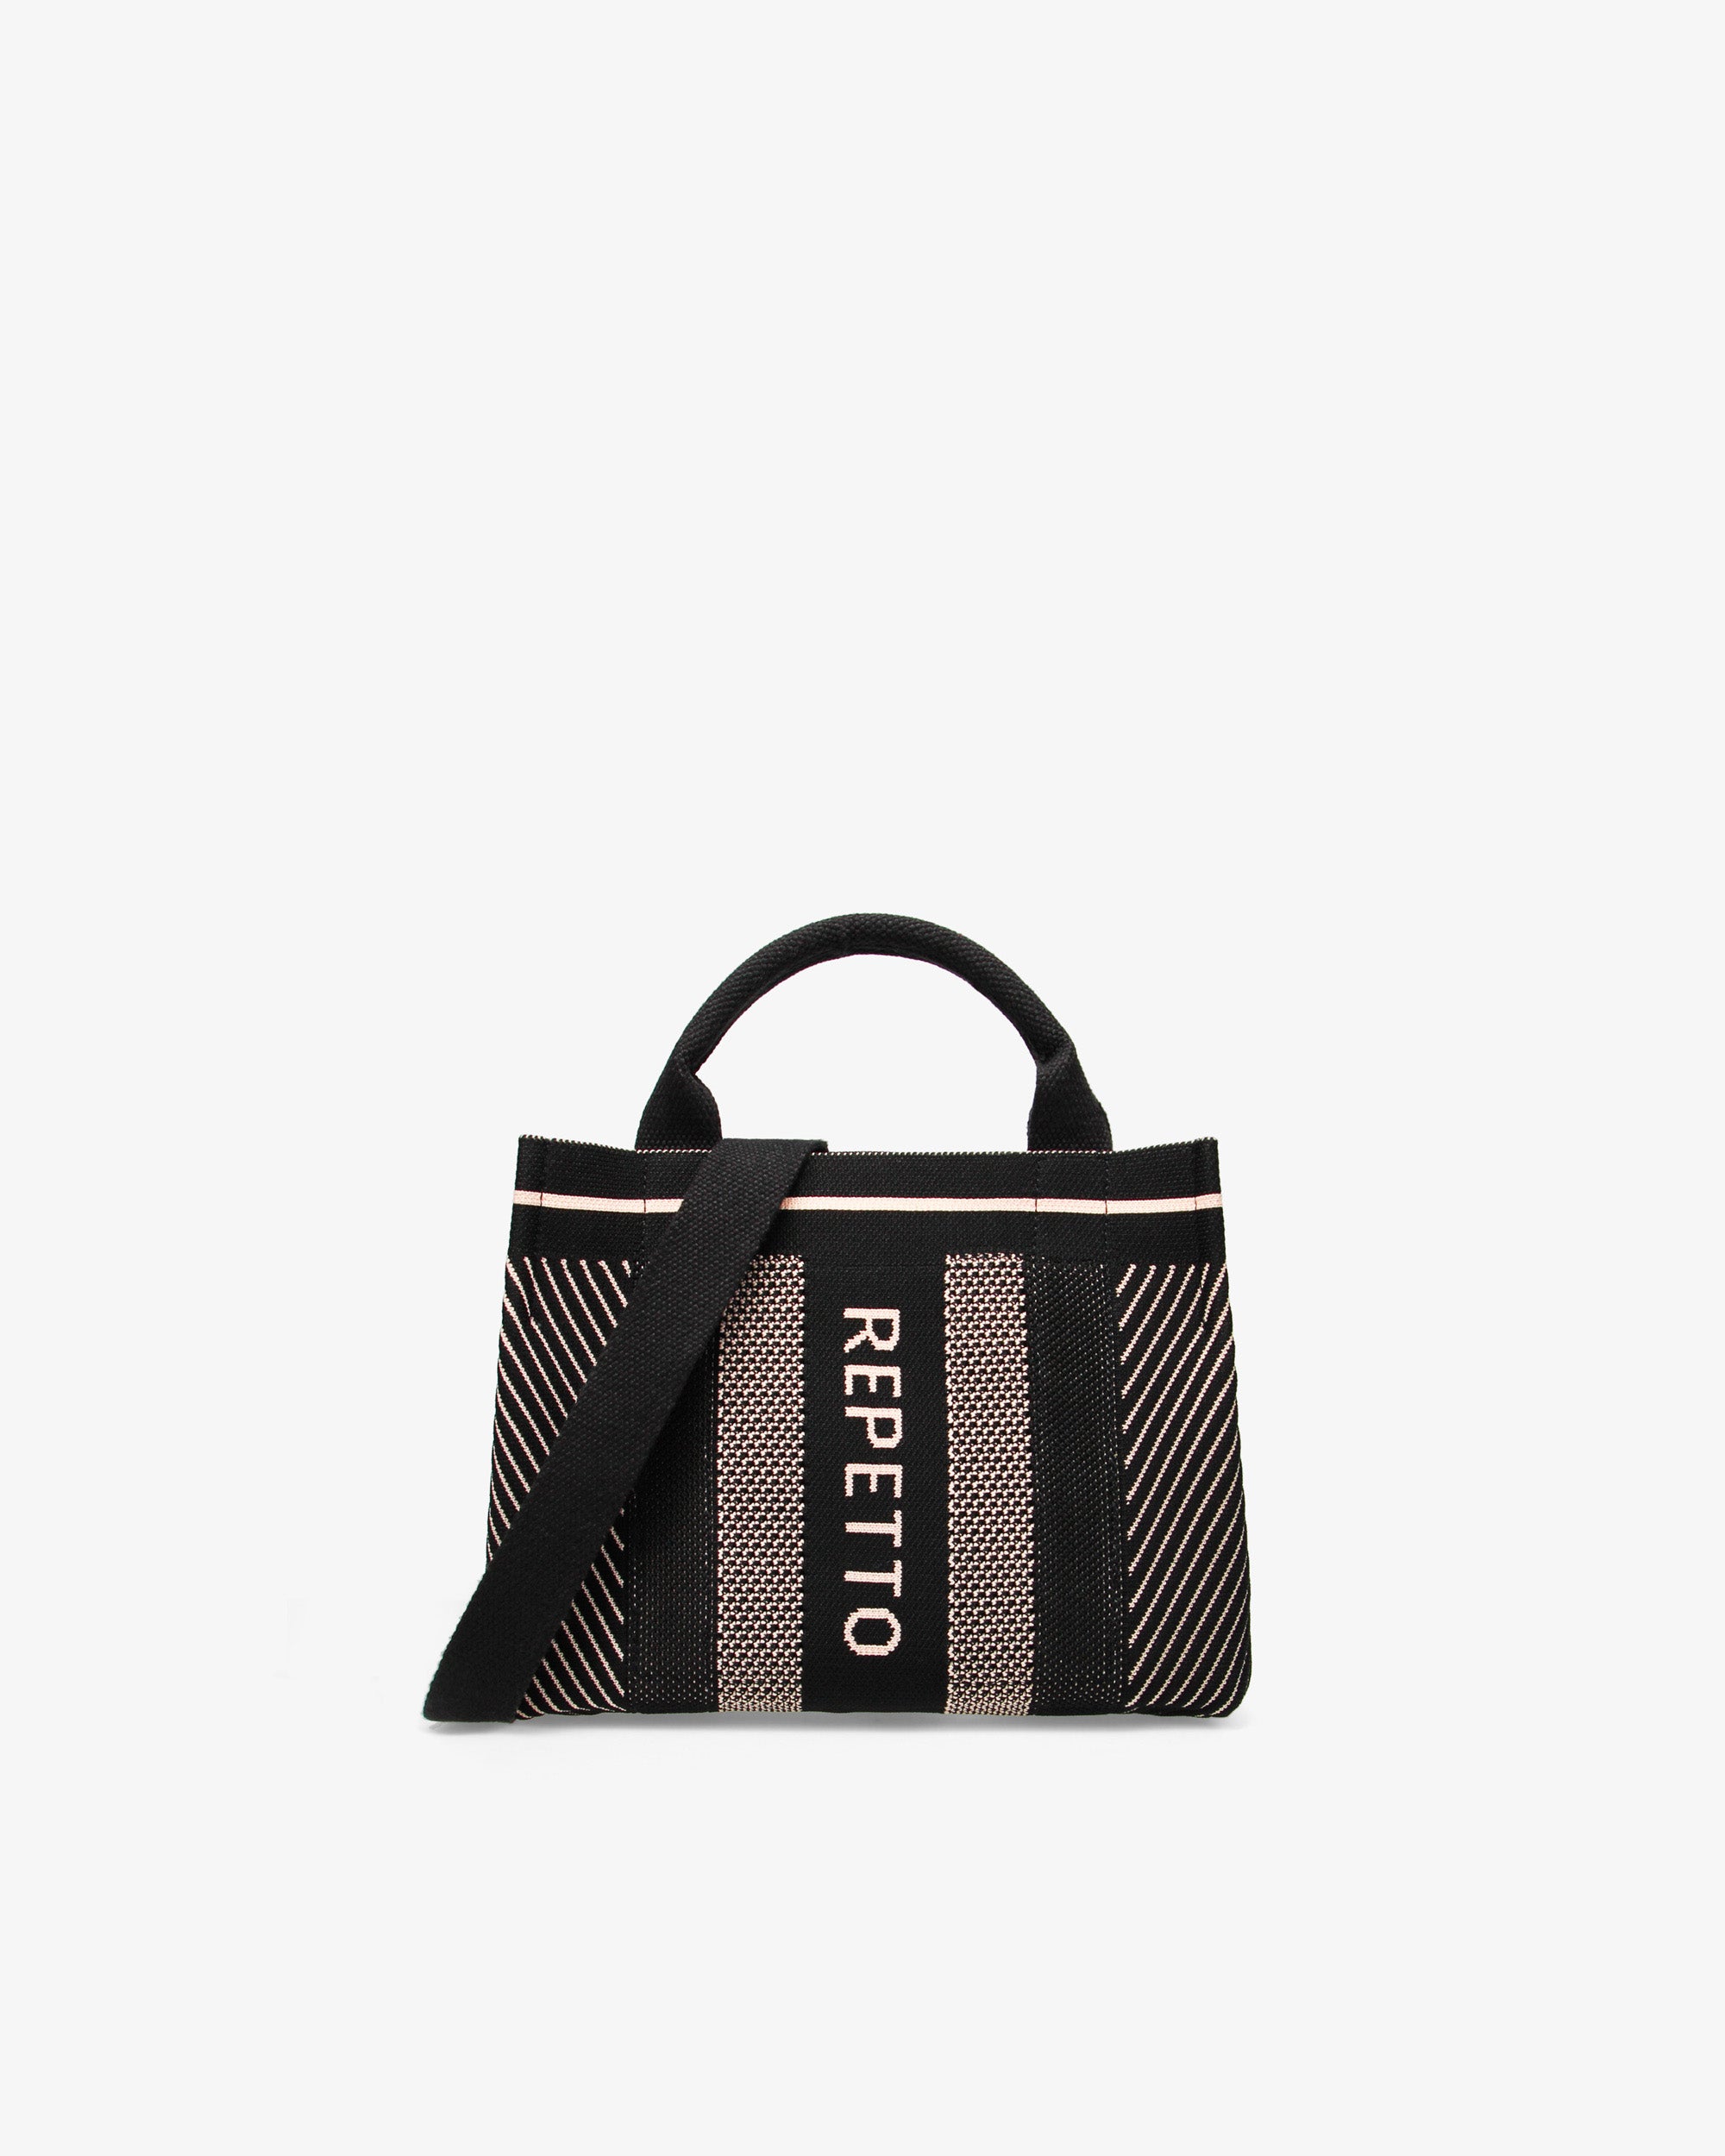 Repetto Small Tote bag